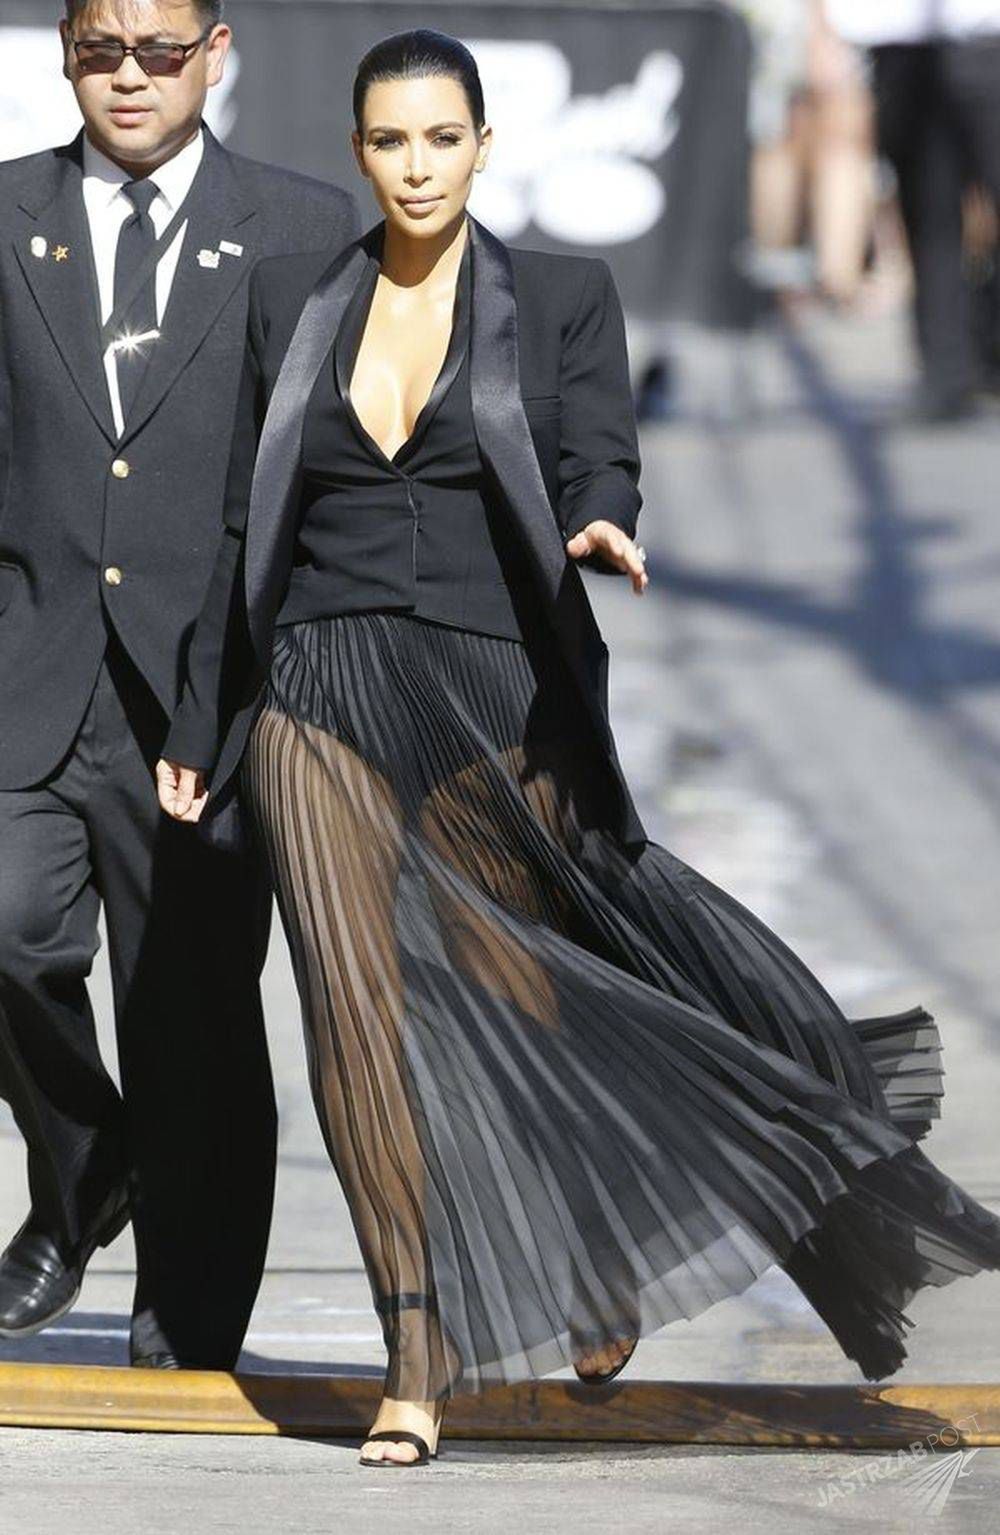 Kim Kardashian w prześwitującej sukience

Fot. screen z Instagram